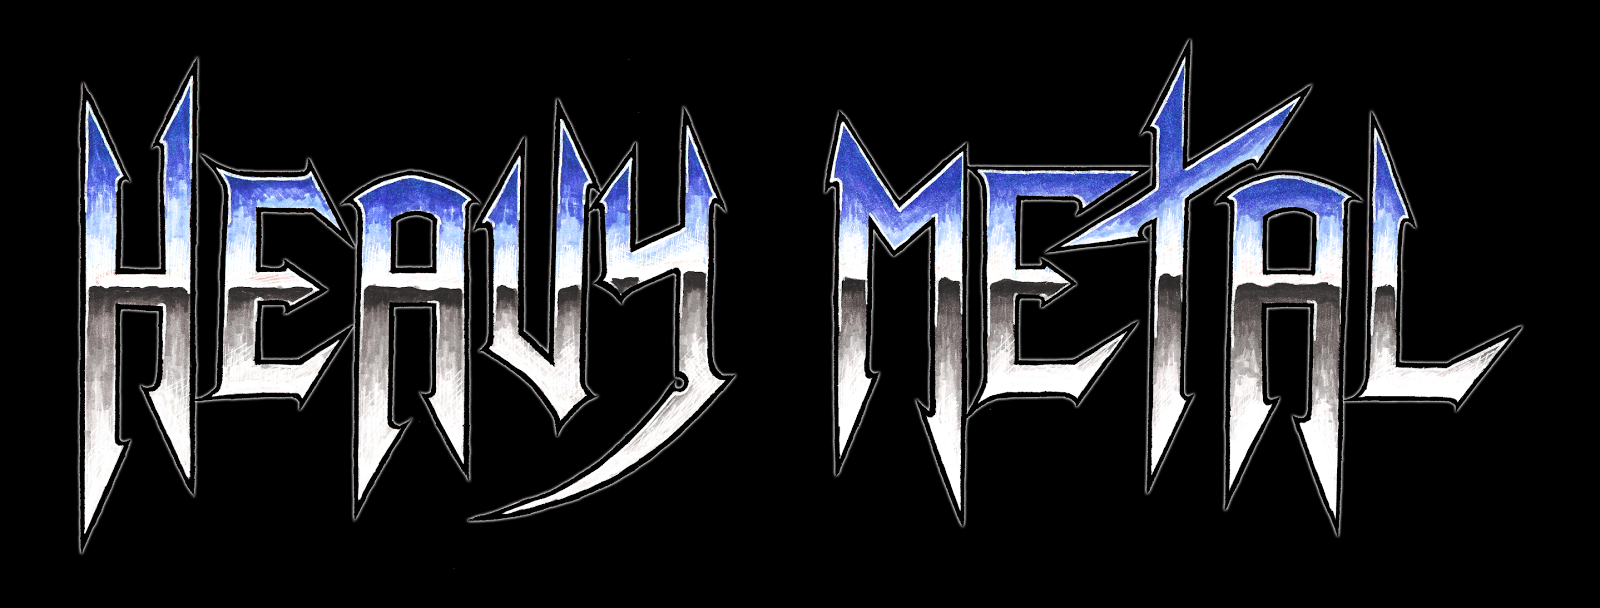 Металл про групп. Эмблемы металл групп. Хеви метал. Metal надпись. Хеви метал логотип.